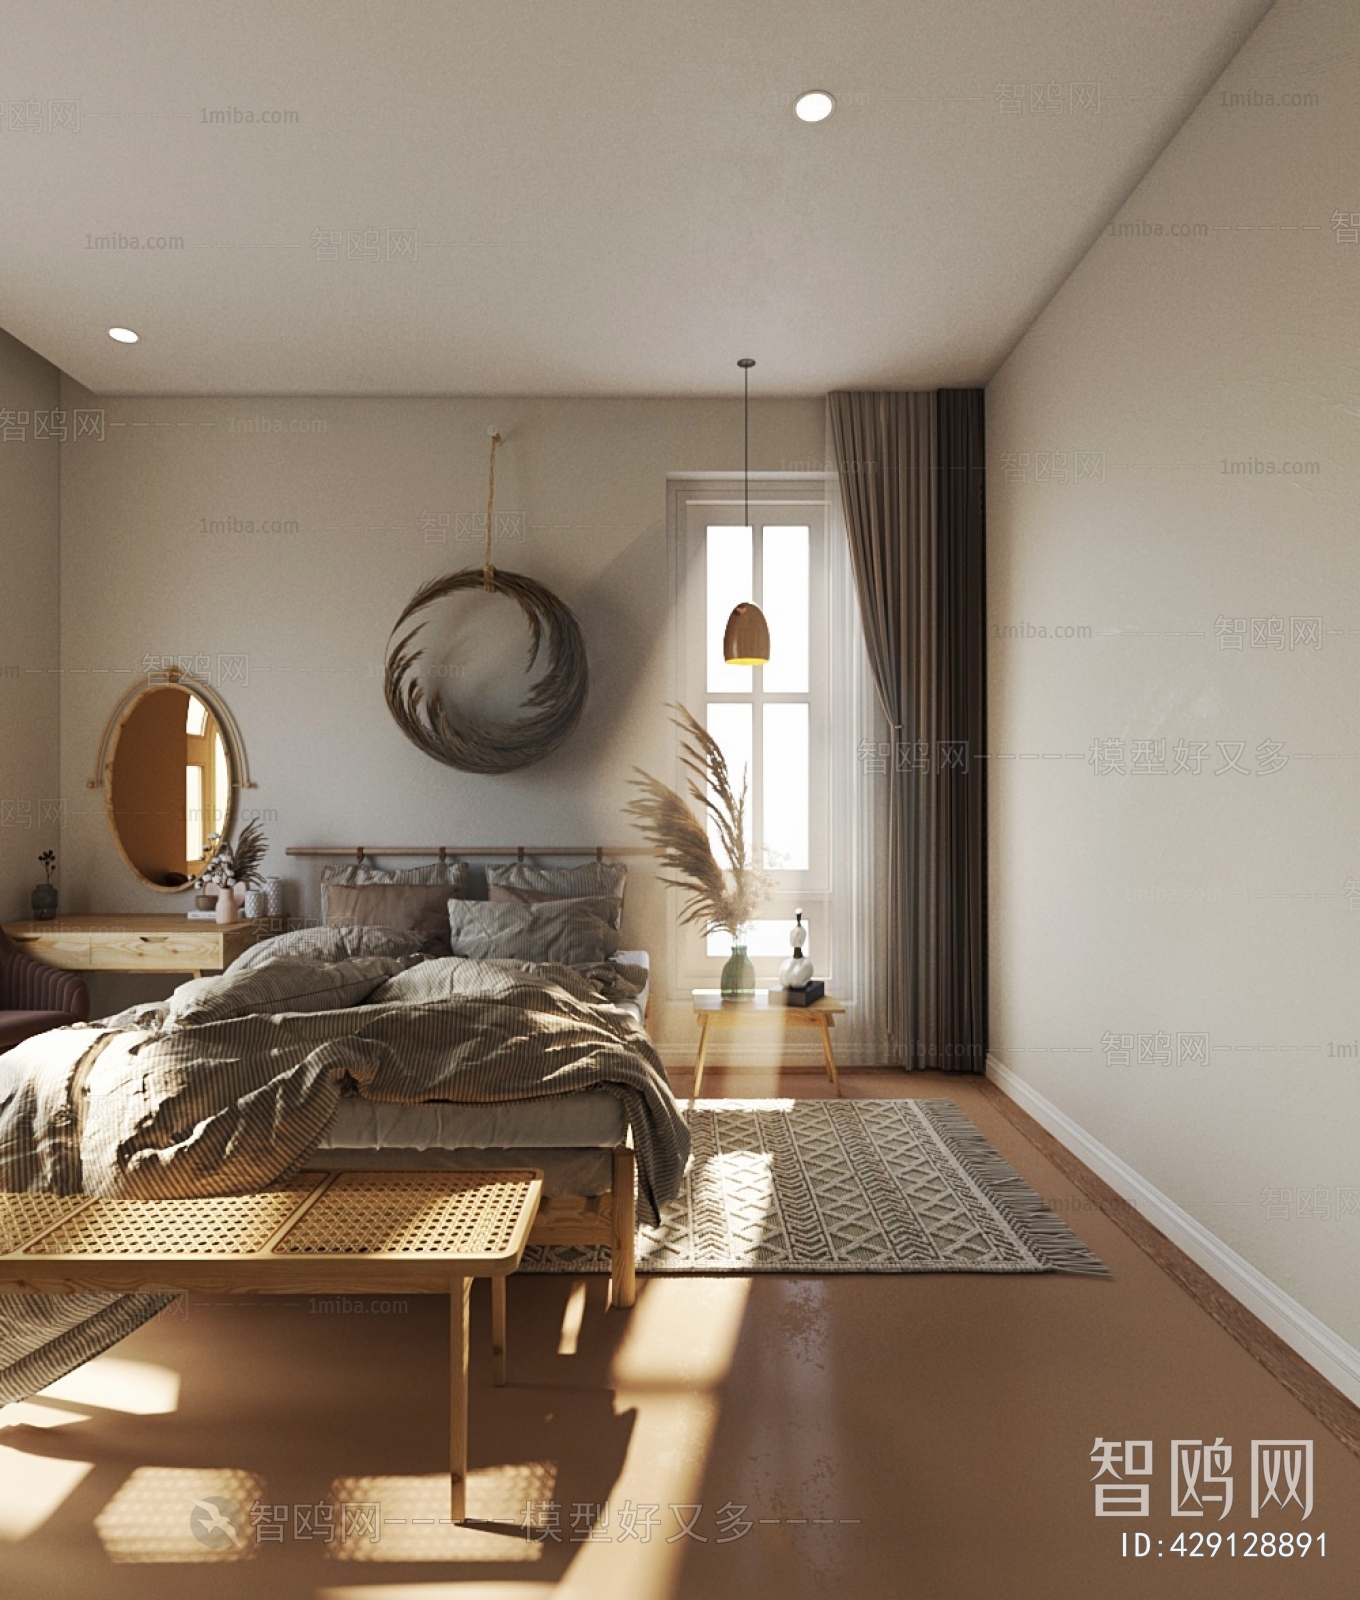 Idyllic Style Bedroom